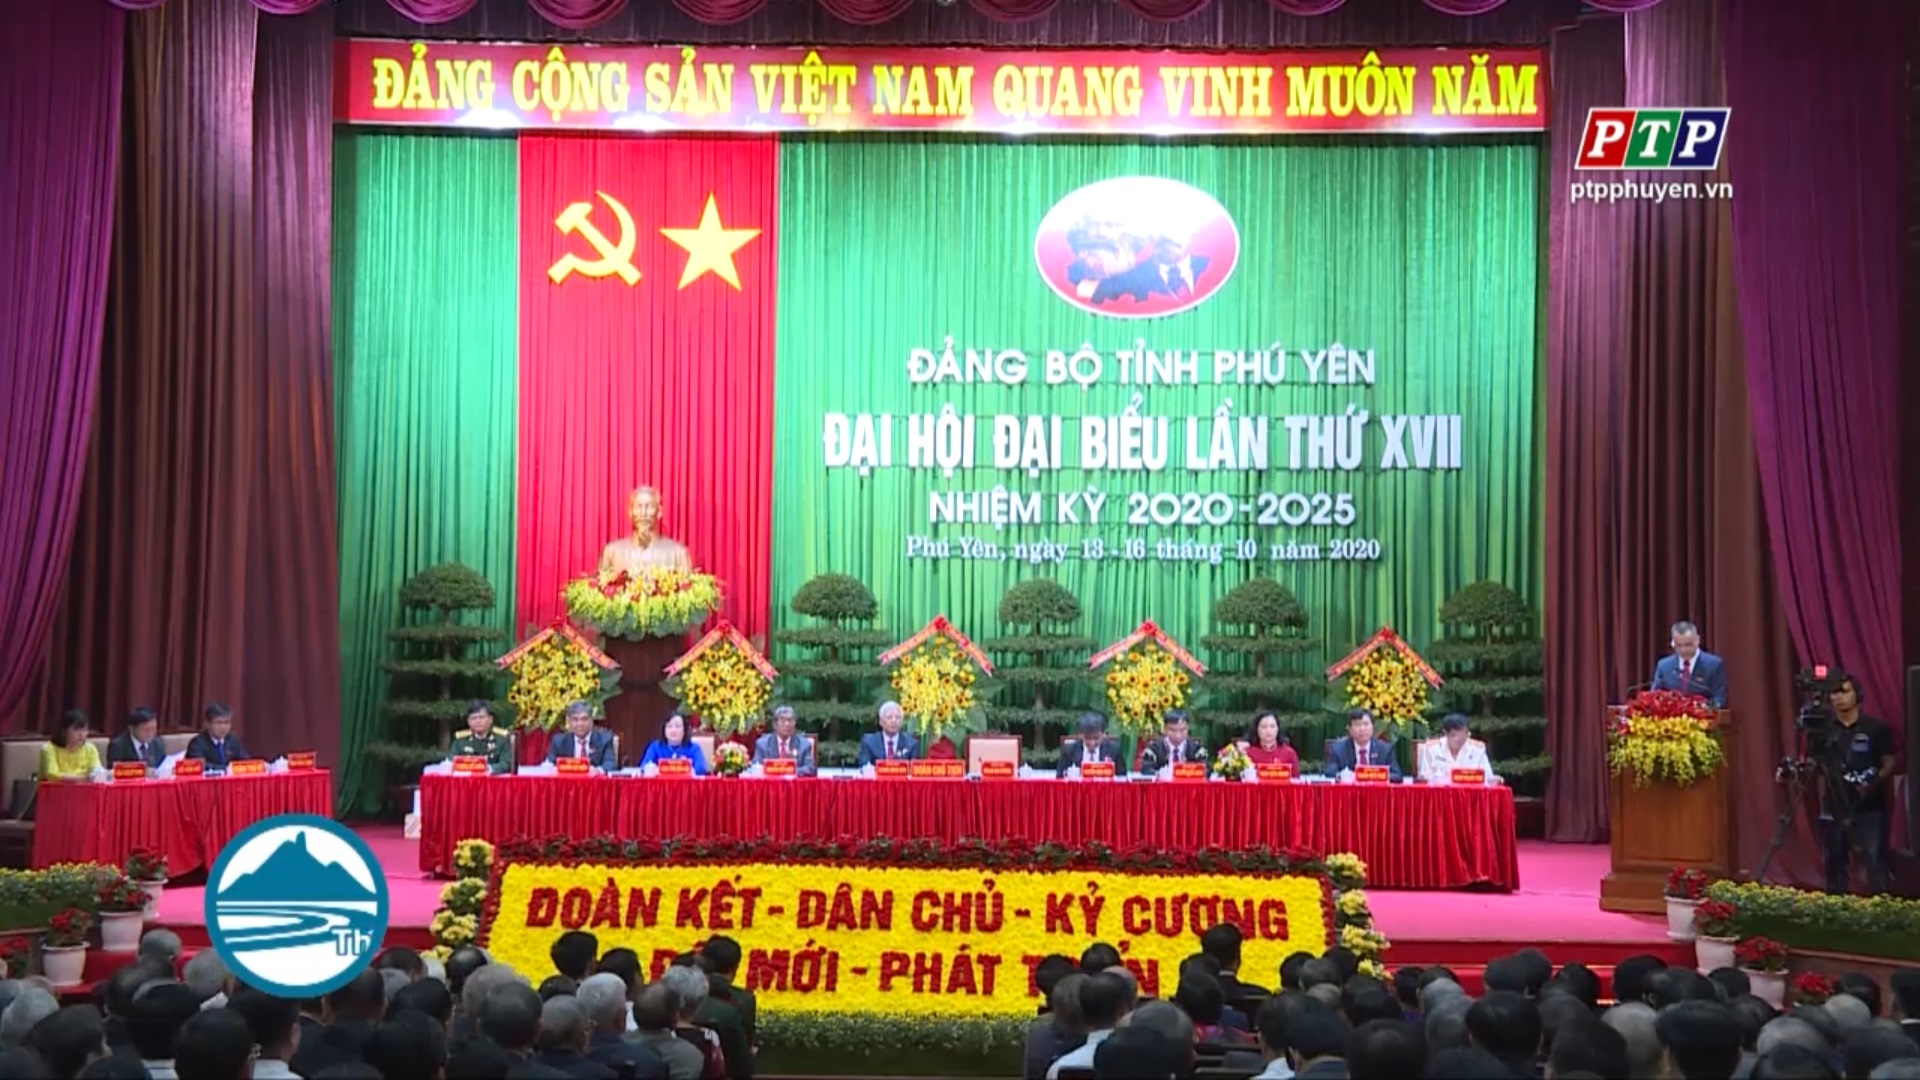 Khai mạc Đại hội đại biểu Đảng bộ tỉnh Phú Yên lần thứ XVII, nhiệm kỳ 2020-2025